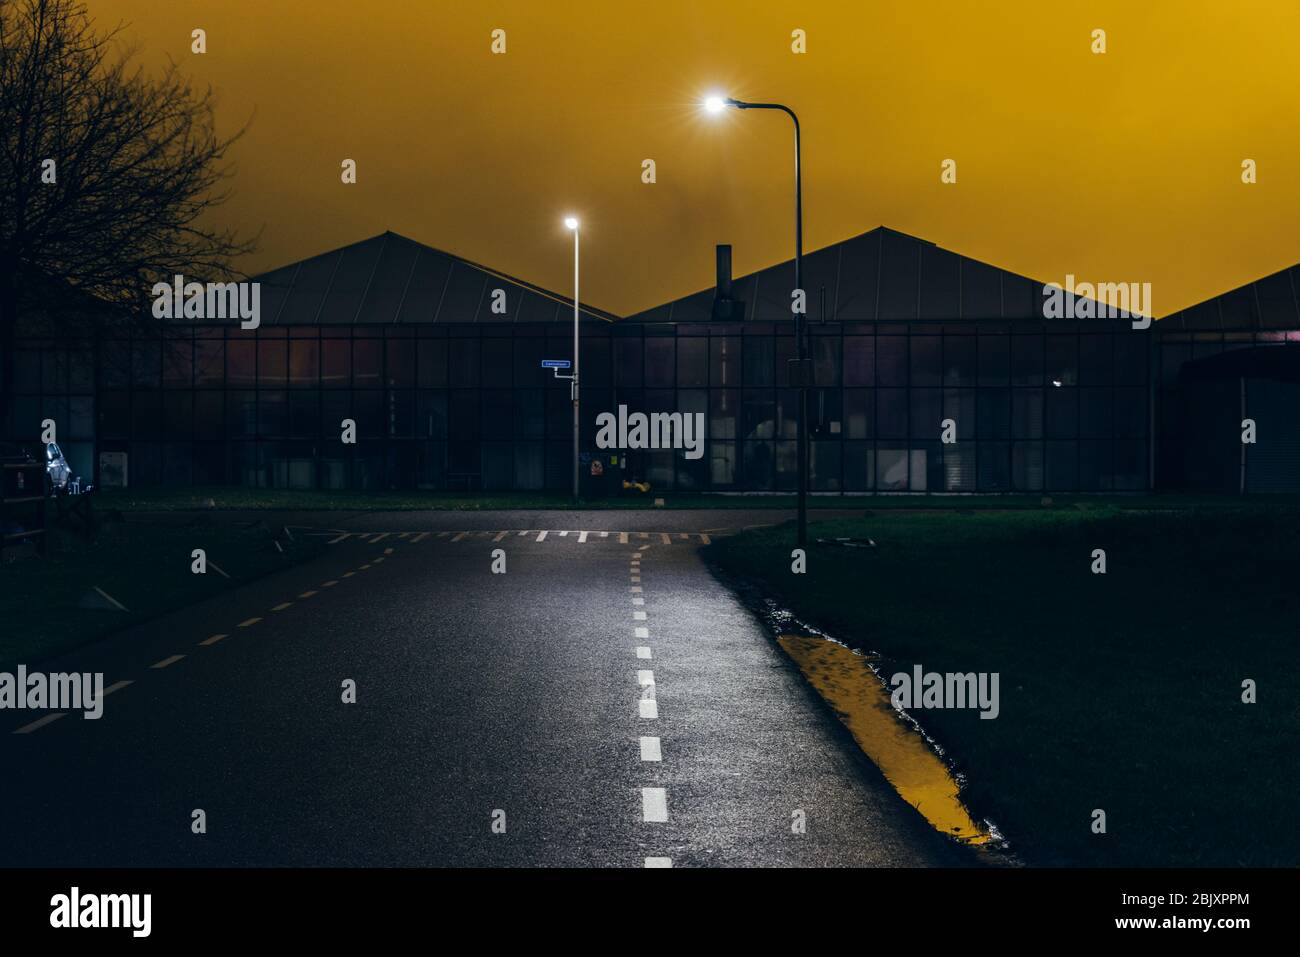 In Westland, Niederlande, Europa, leuchten nachts helle Lichter aus dem Gewächshaus. Beleuchtetes Industriegewächshaus mit gelben Leuchten. Stockfoto